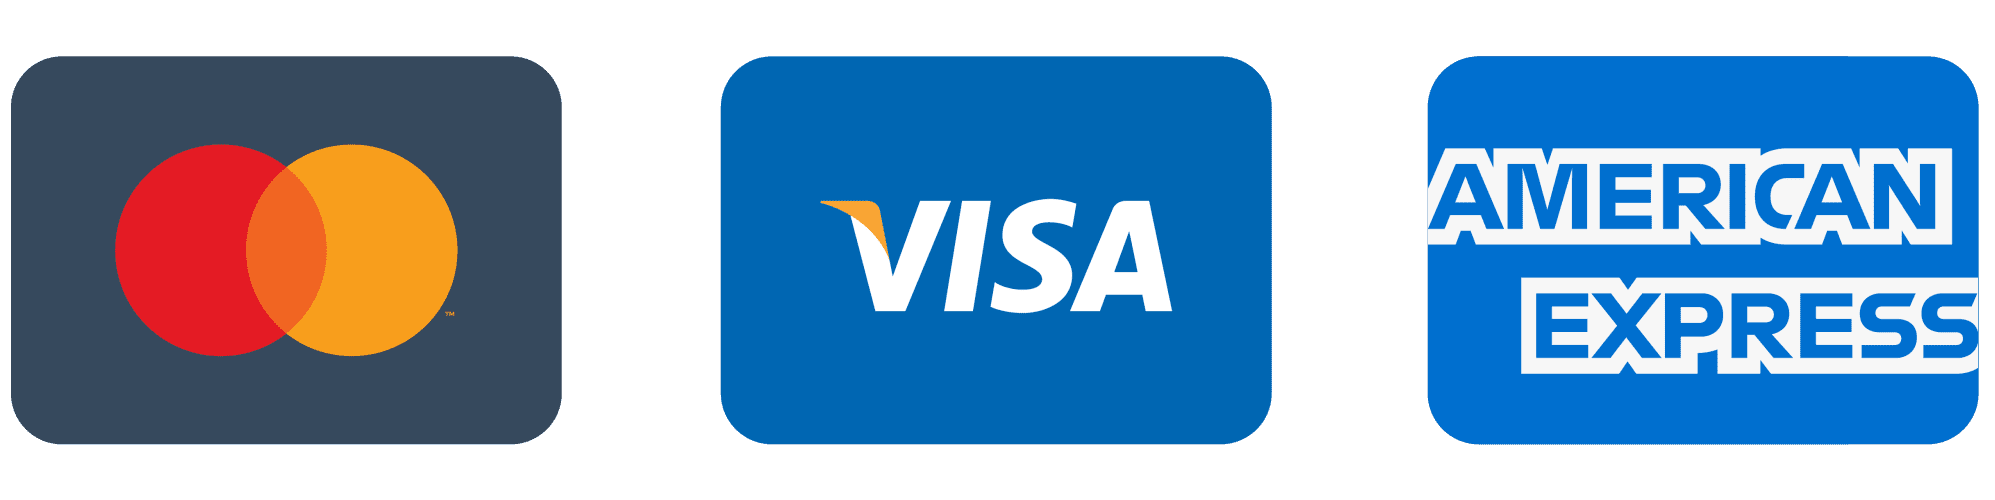 minimal-credit-card-icons-no-paypal